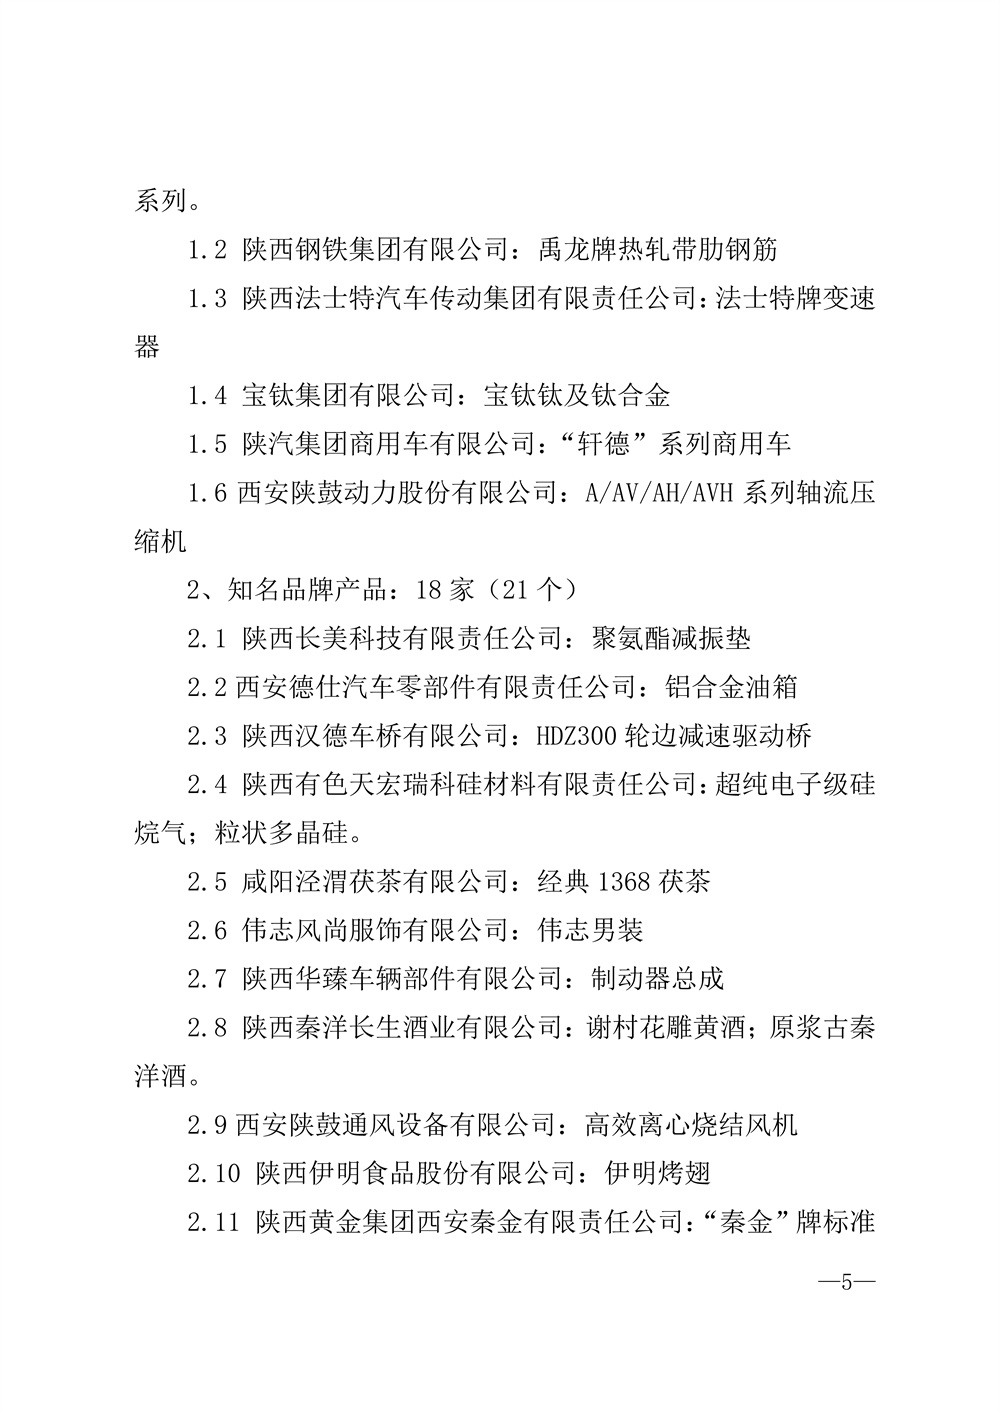 22-52陕西省2021年度品牌评选公示通知_页面_05.jpg